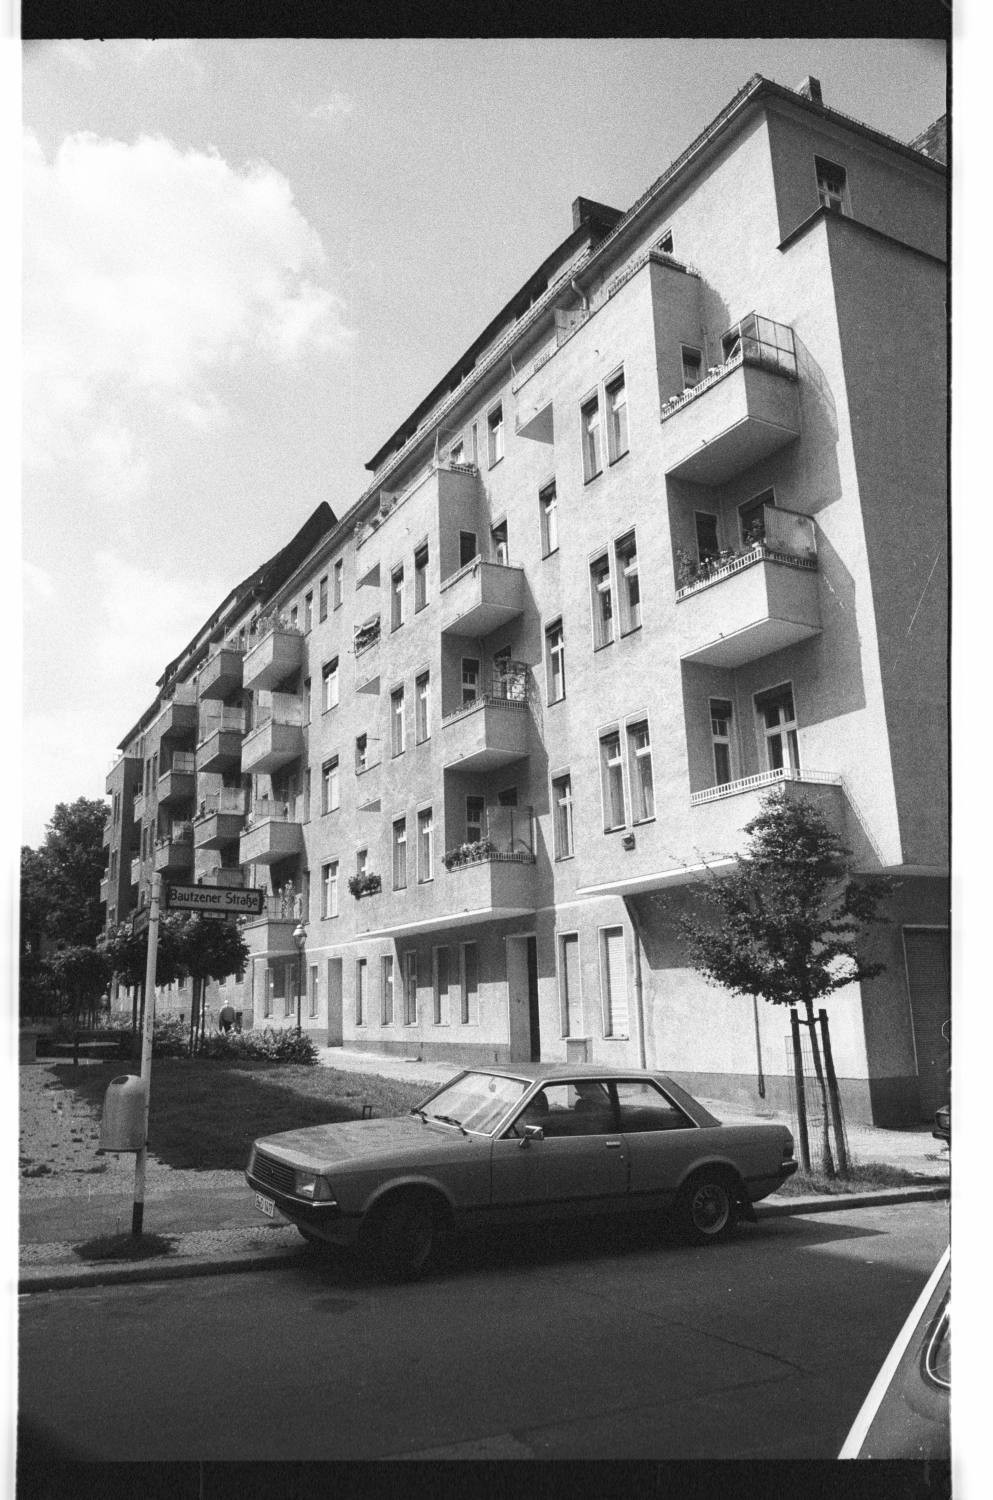 Kleinbildnegative: Mietshäuser, Bautzener Straße, 1980 (Museen Tempelhof-Schöneberg/Jürgen Henschel RR-F)